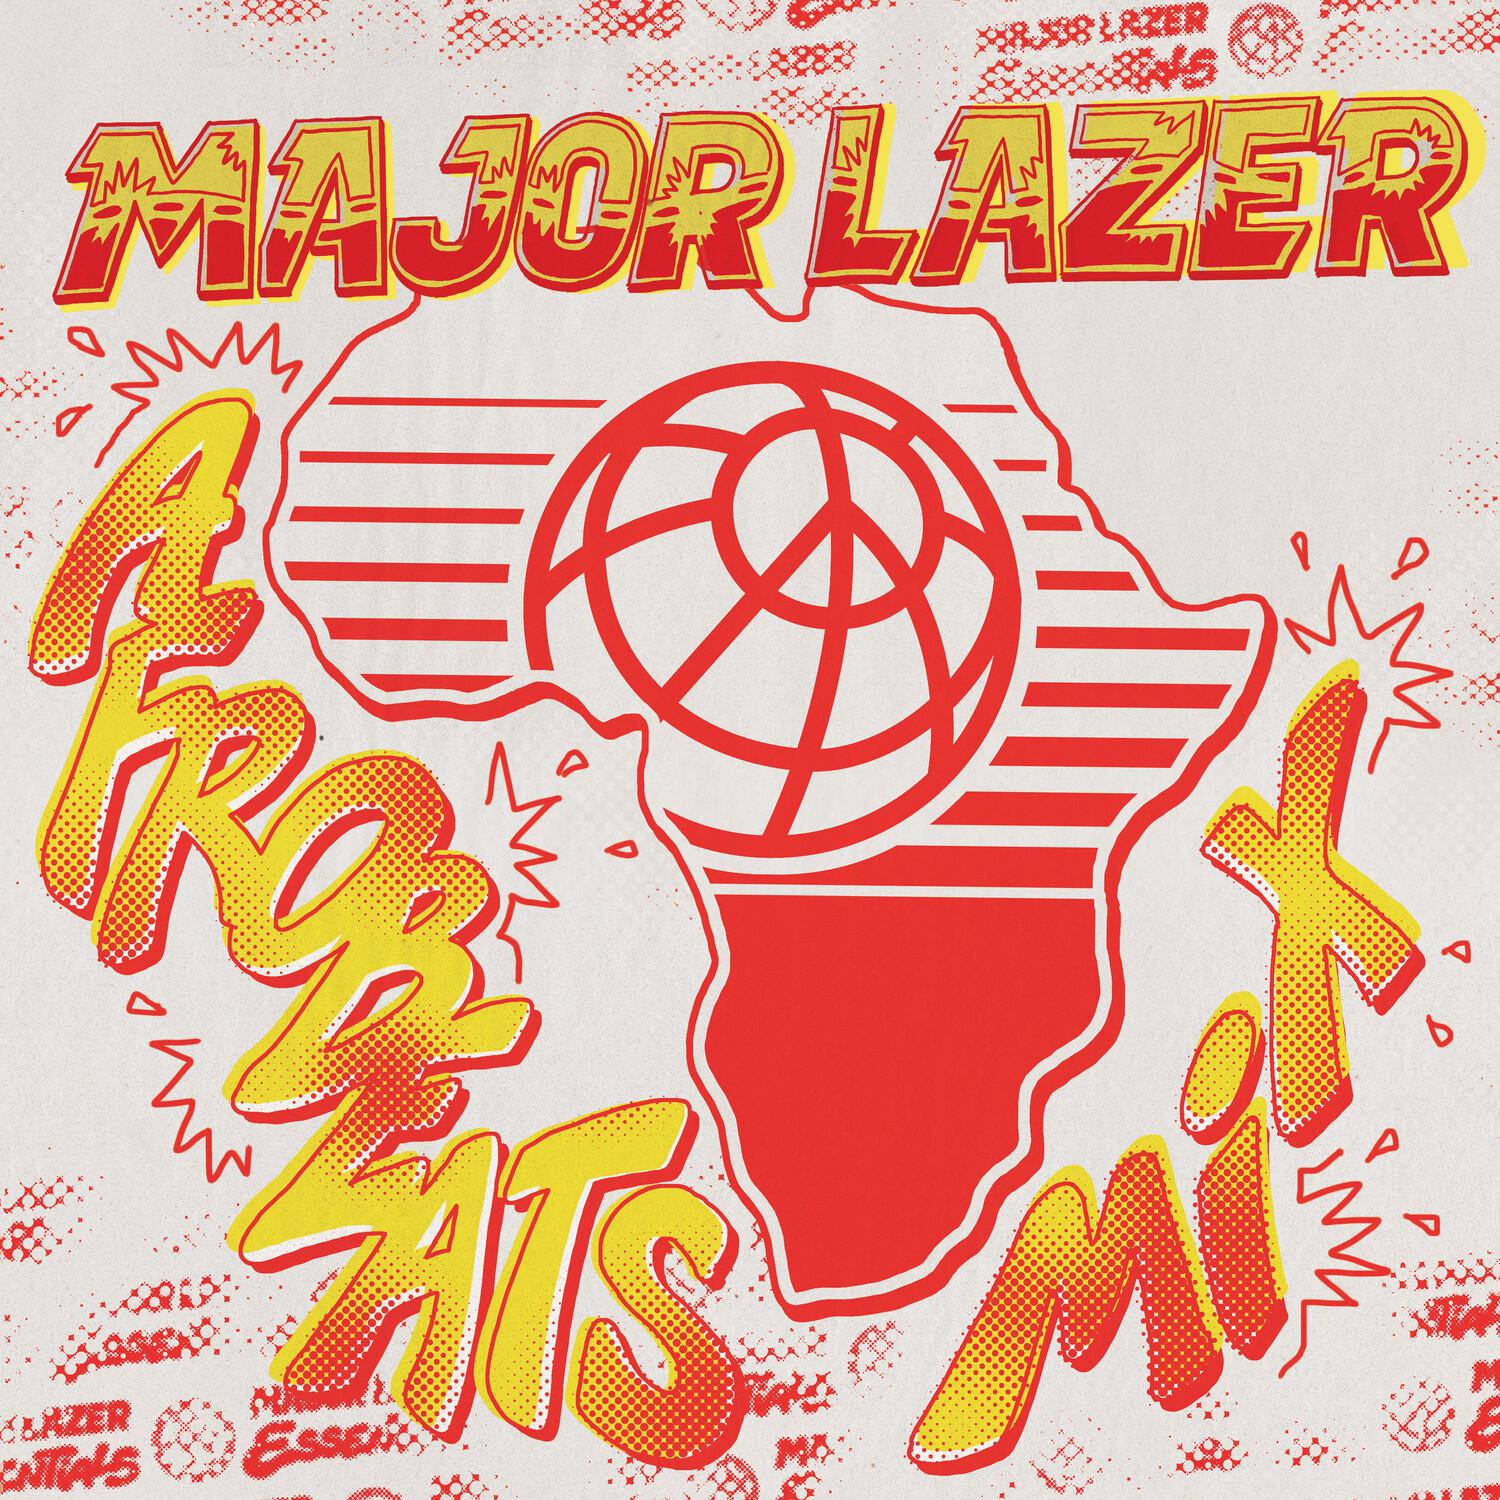 Major Lazer - Stay Shining (Mixed)